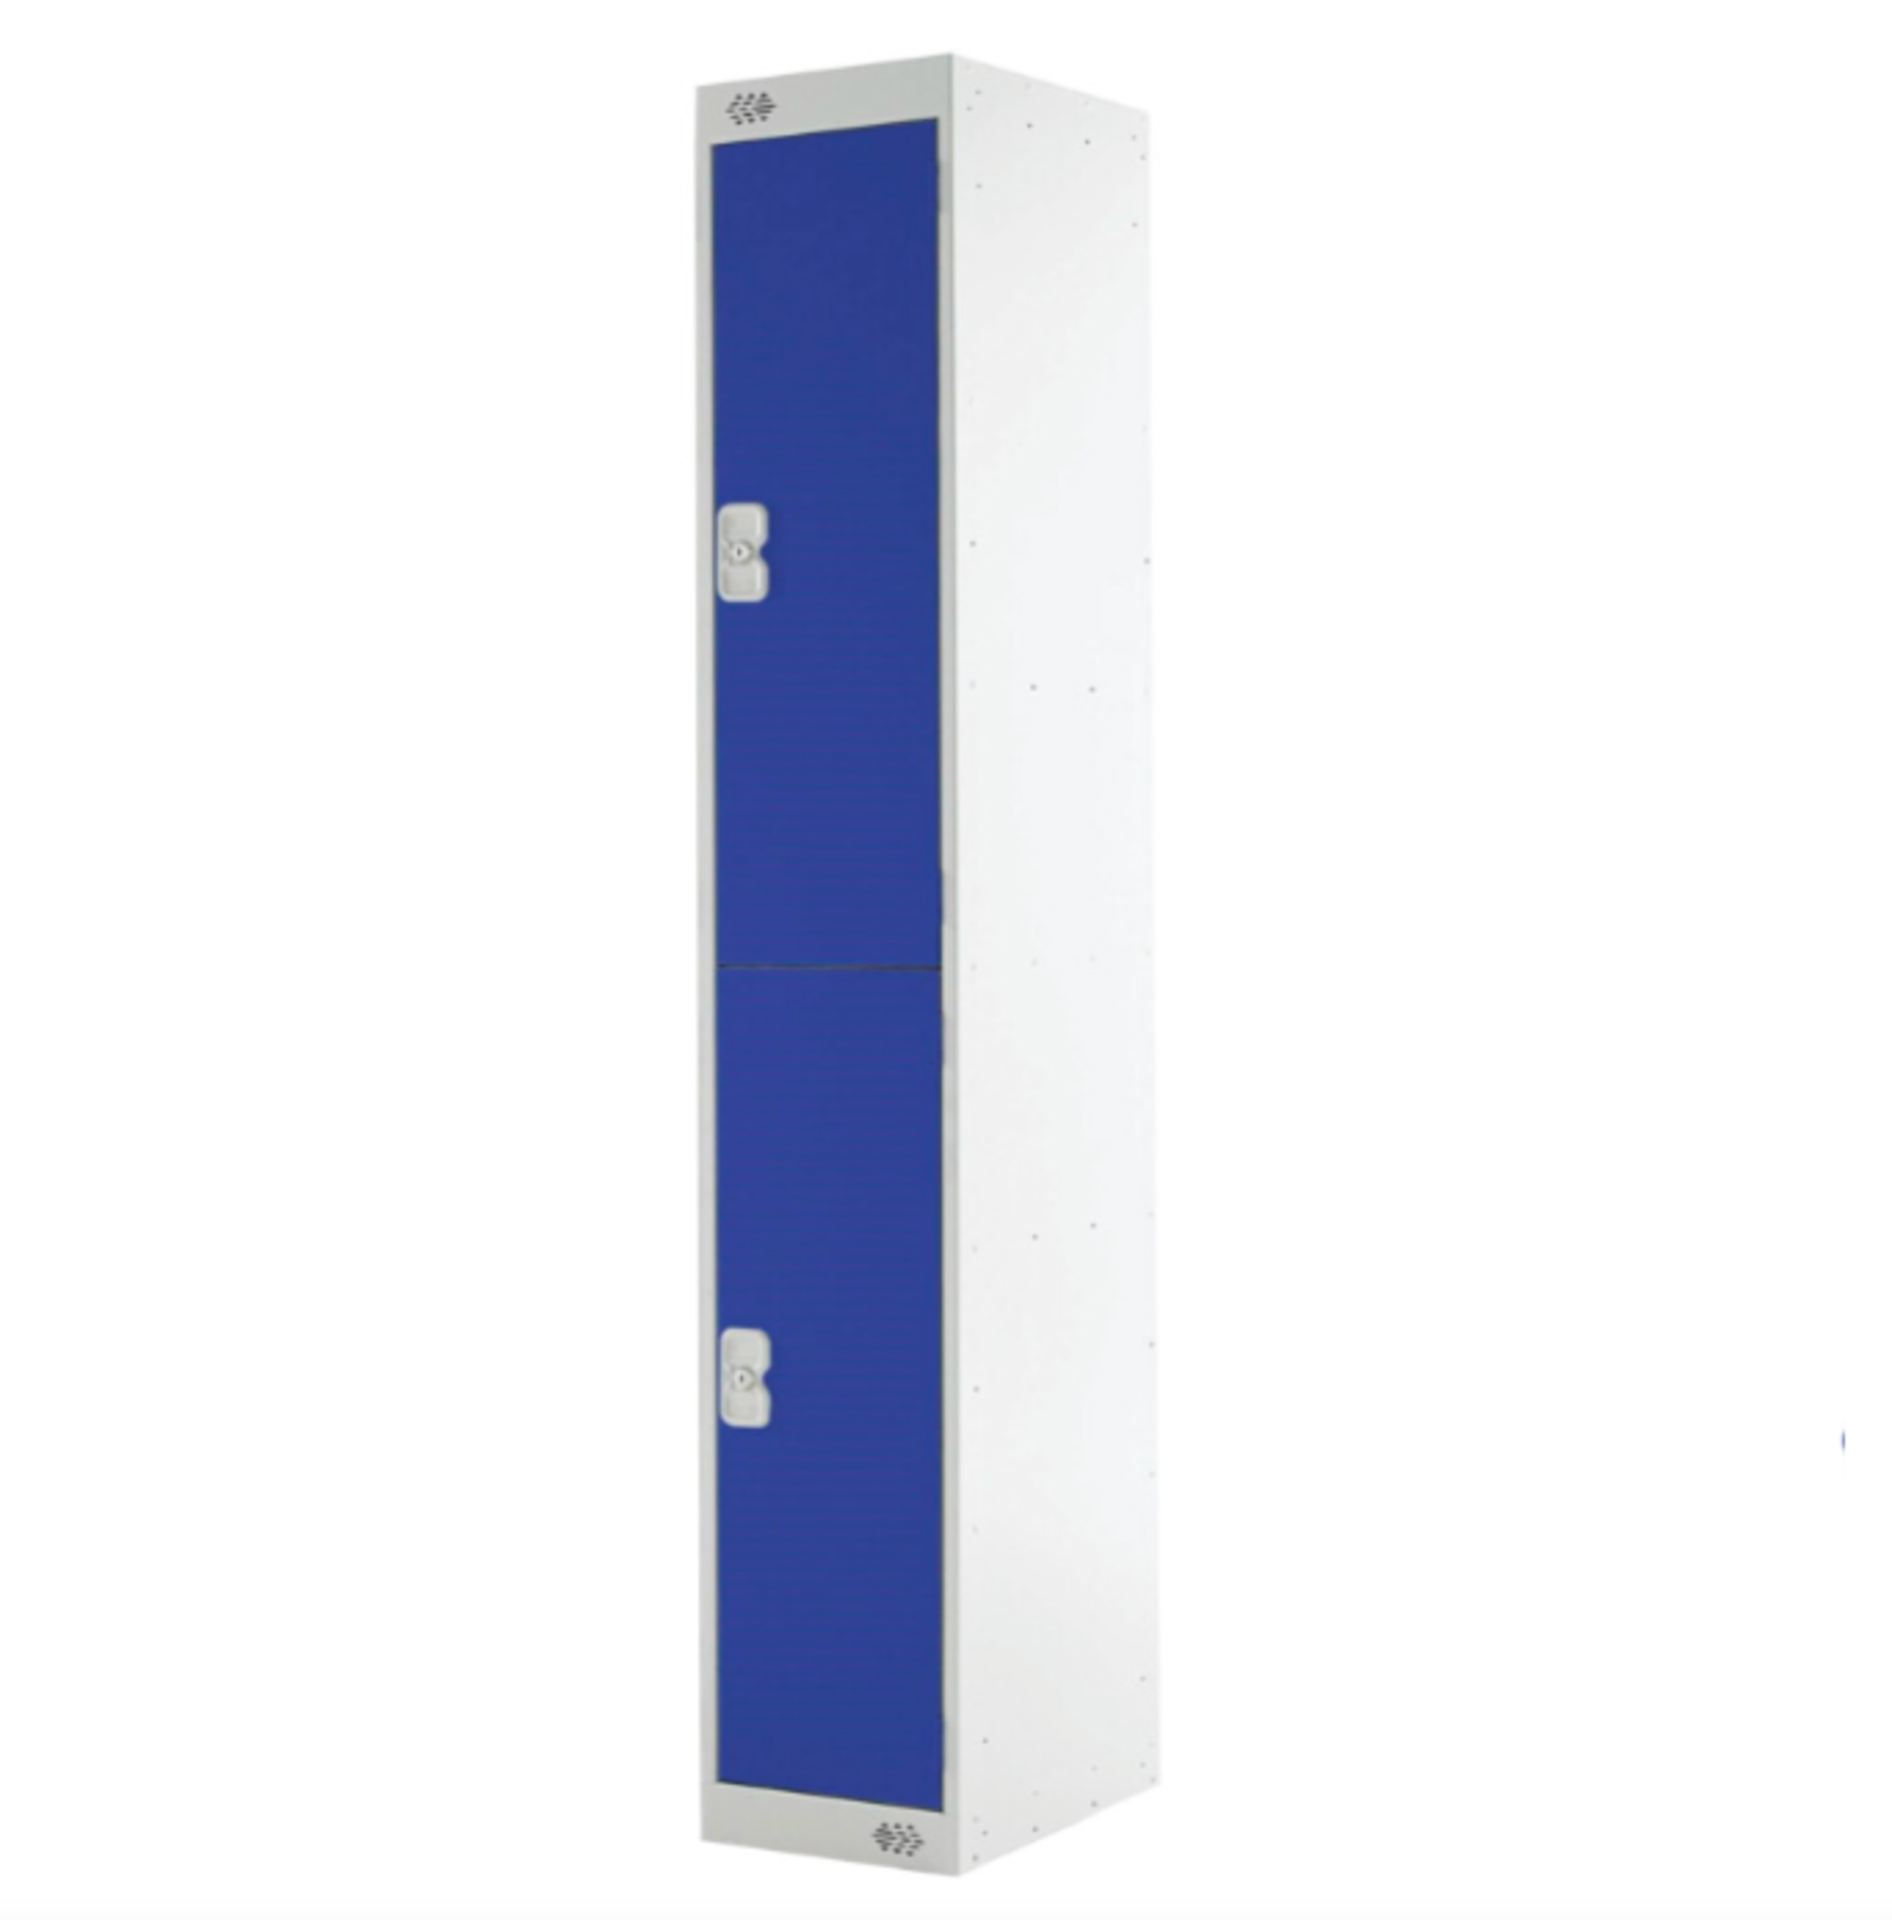 2x MATLOCK 2-DOOR LOCKERS - BLUE - 1800x450x450mm BRAND NEW